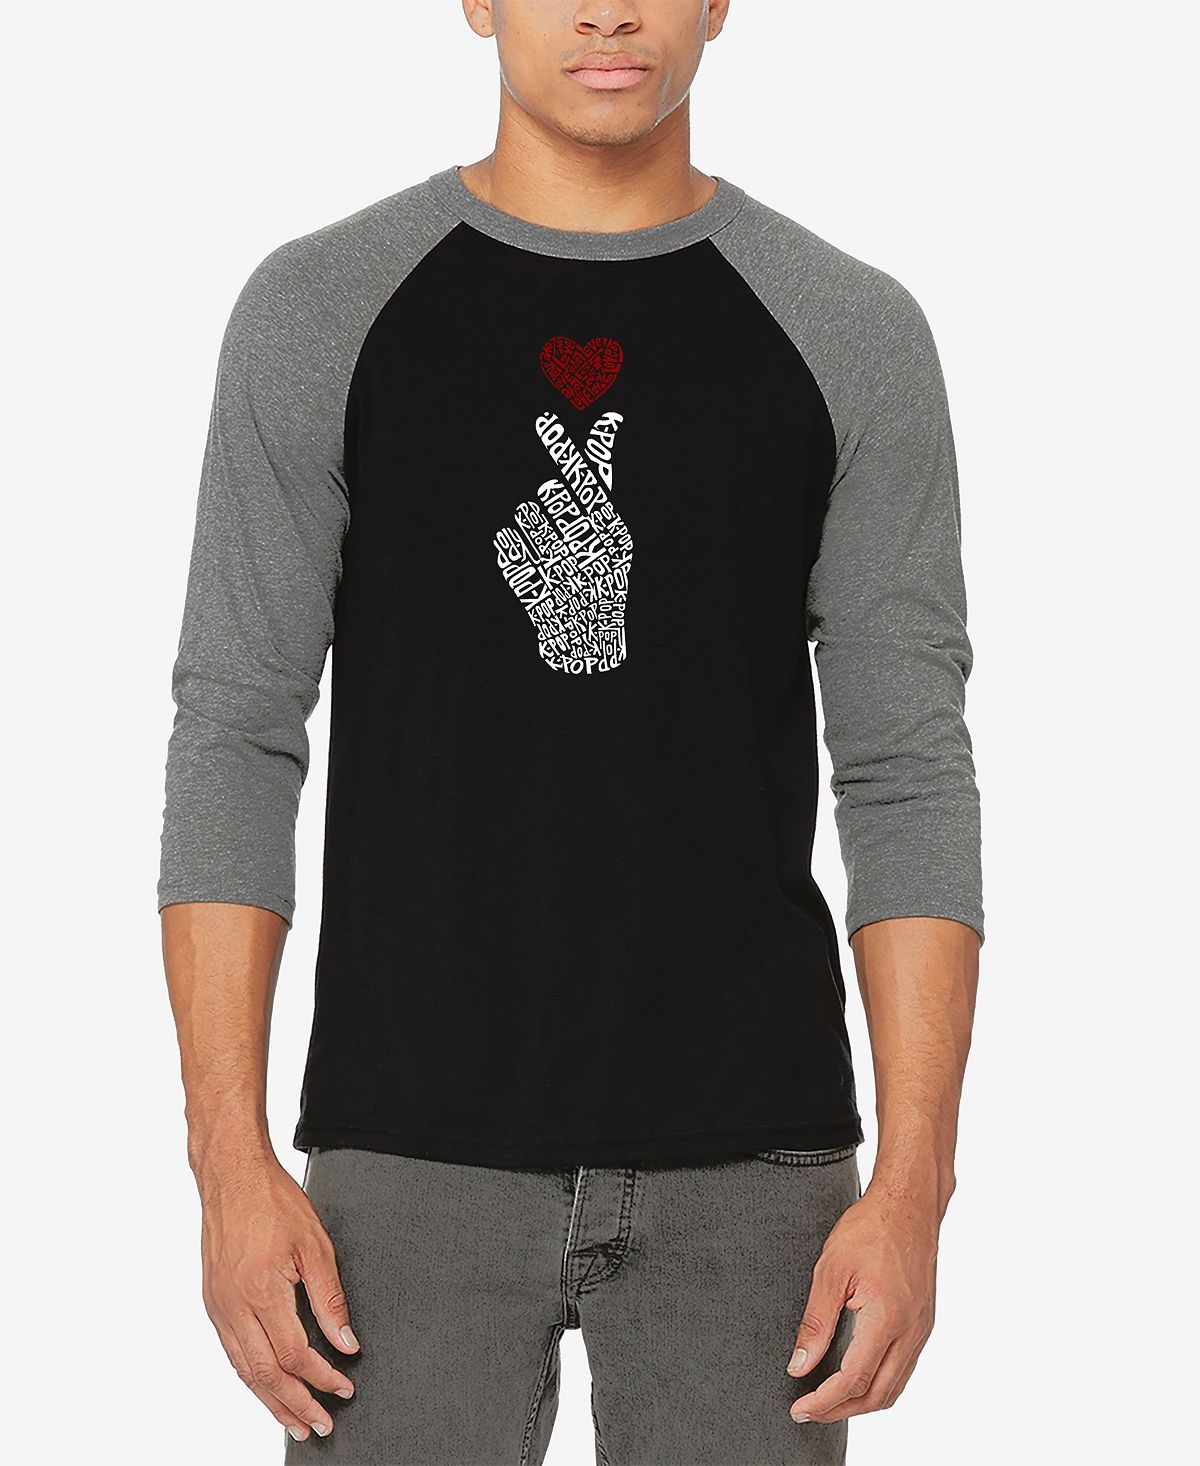 Мужская бейсбольная футболка реглан с рукавом 3/4 k-pop word art футболка LA Pop Art, мульти 2023 акриловая фотография в стиле k pop